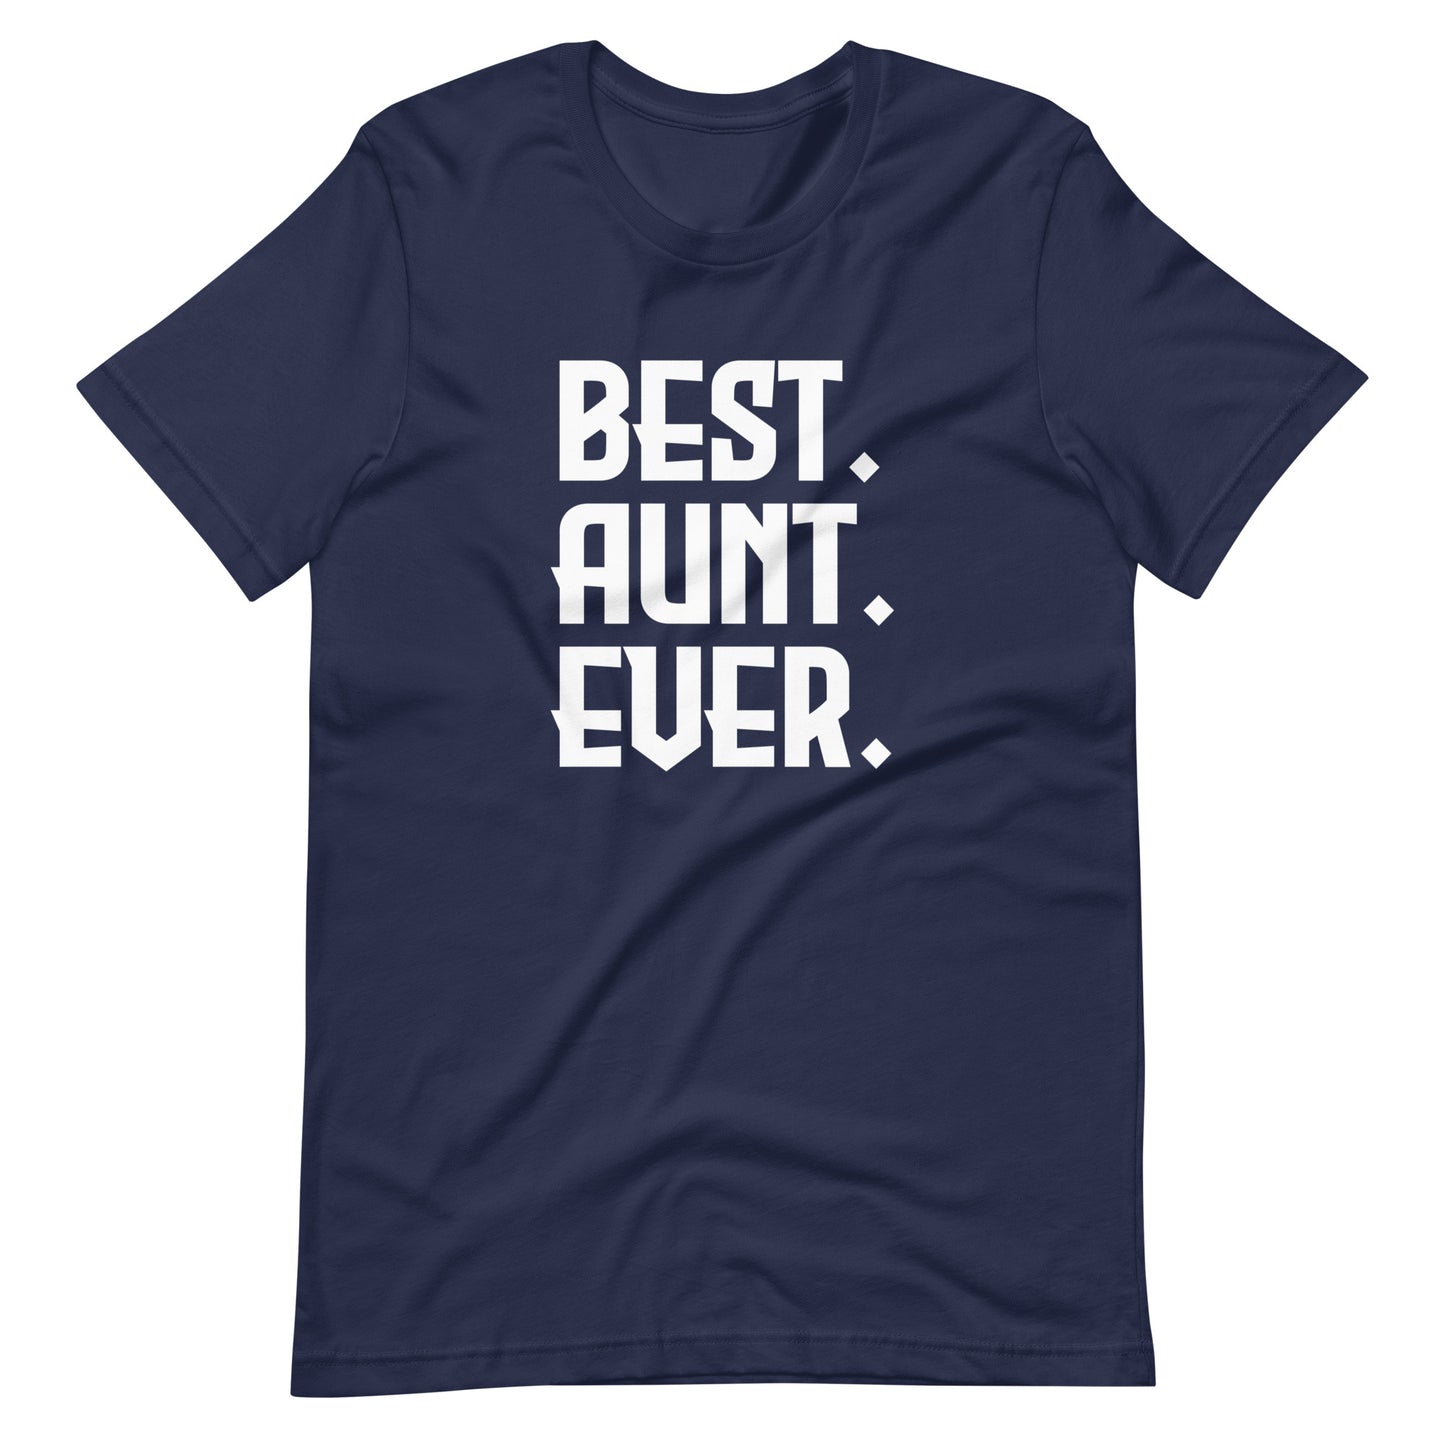 Best. Aunt. Ever.